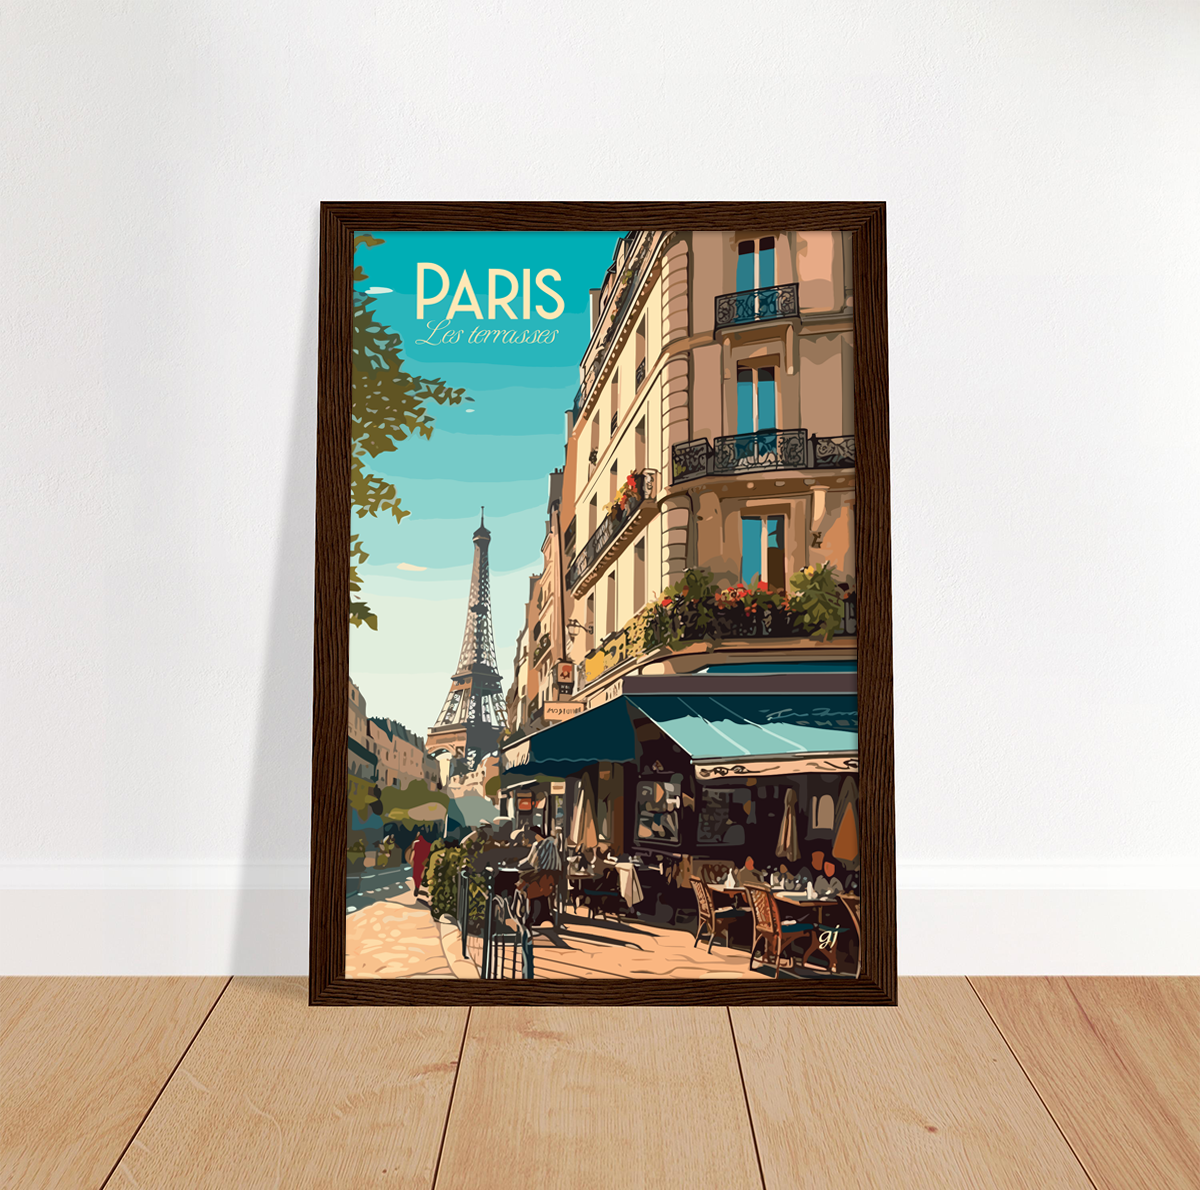 Paris poster by bon voyage design